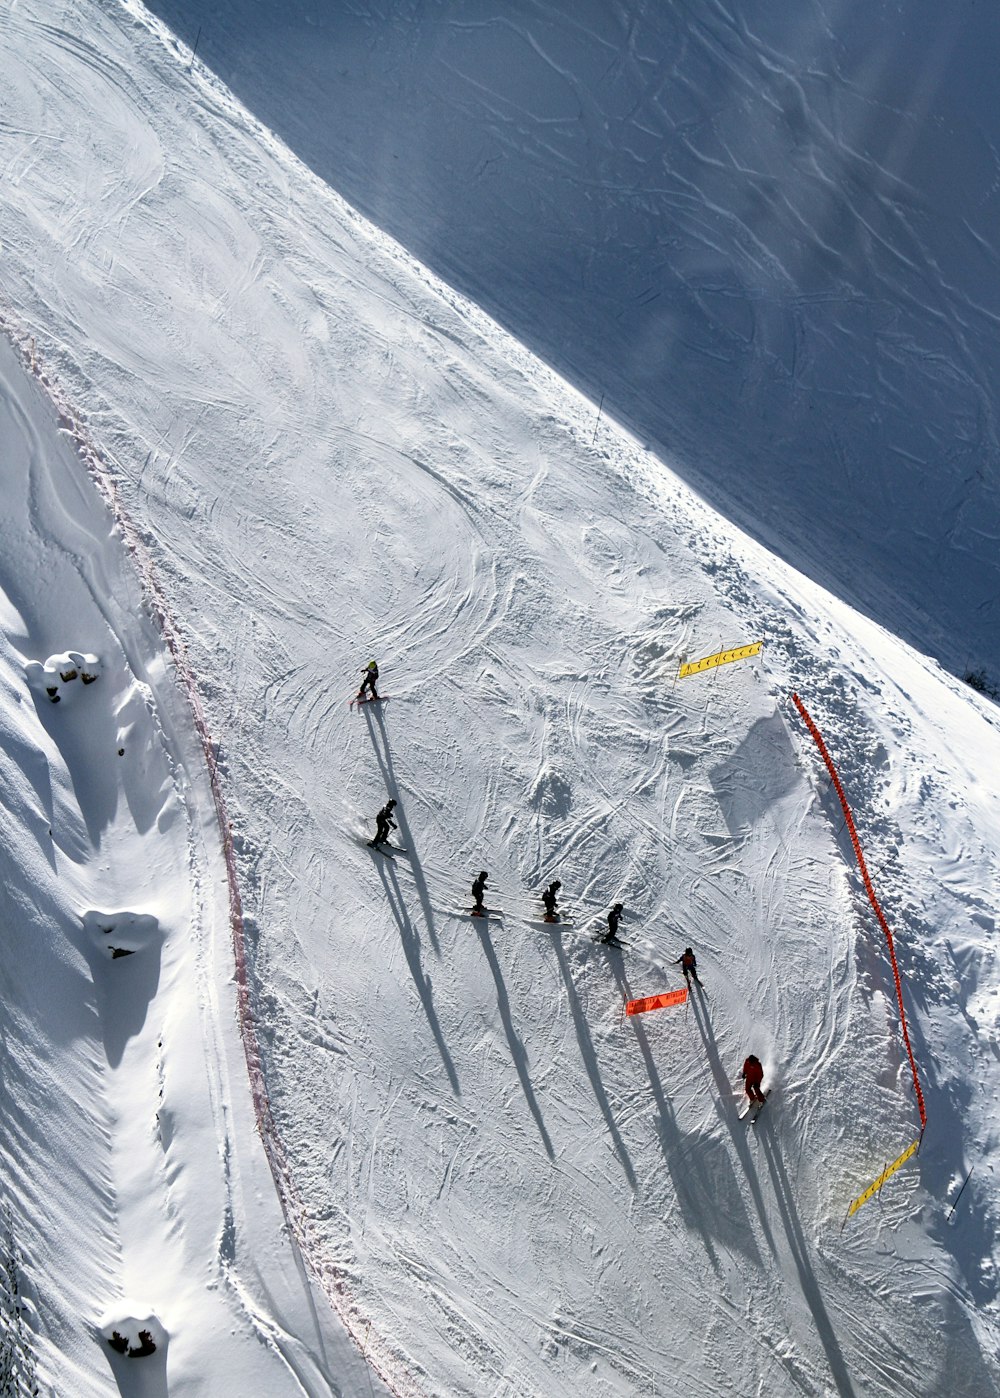 Vista superior de personas patinando sobre la nieve